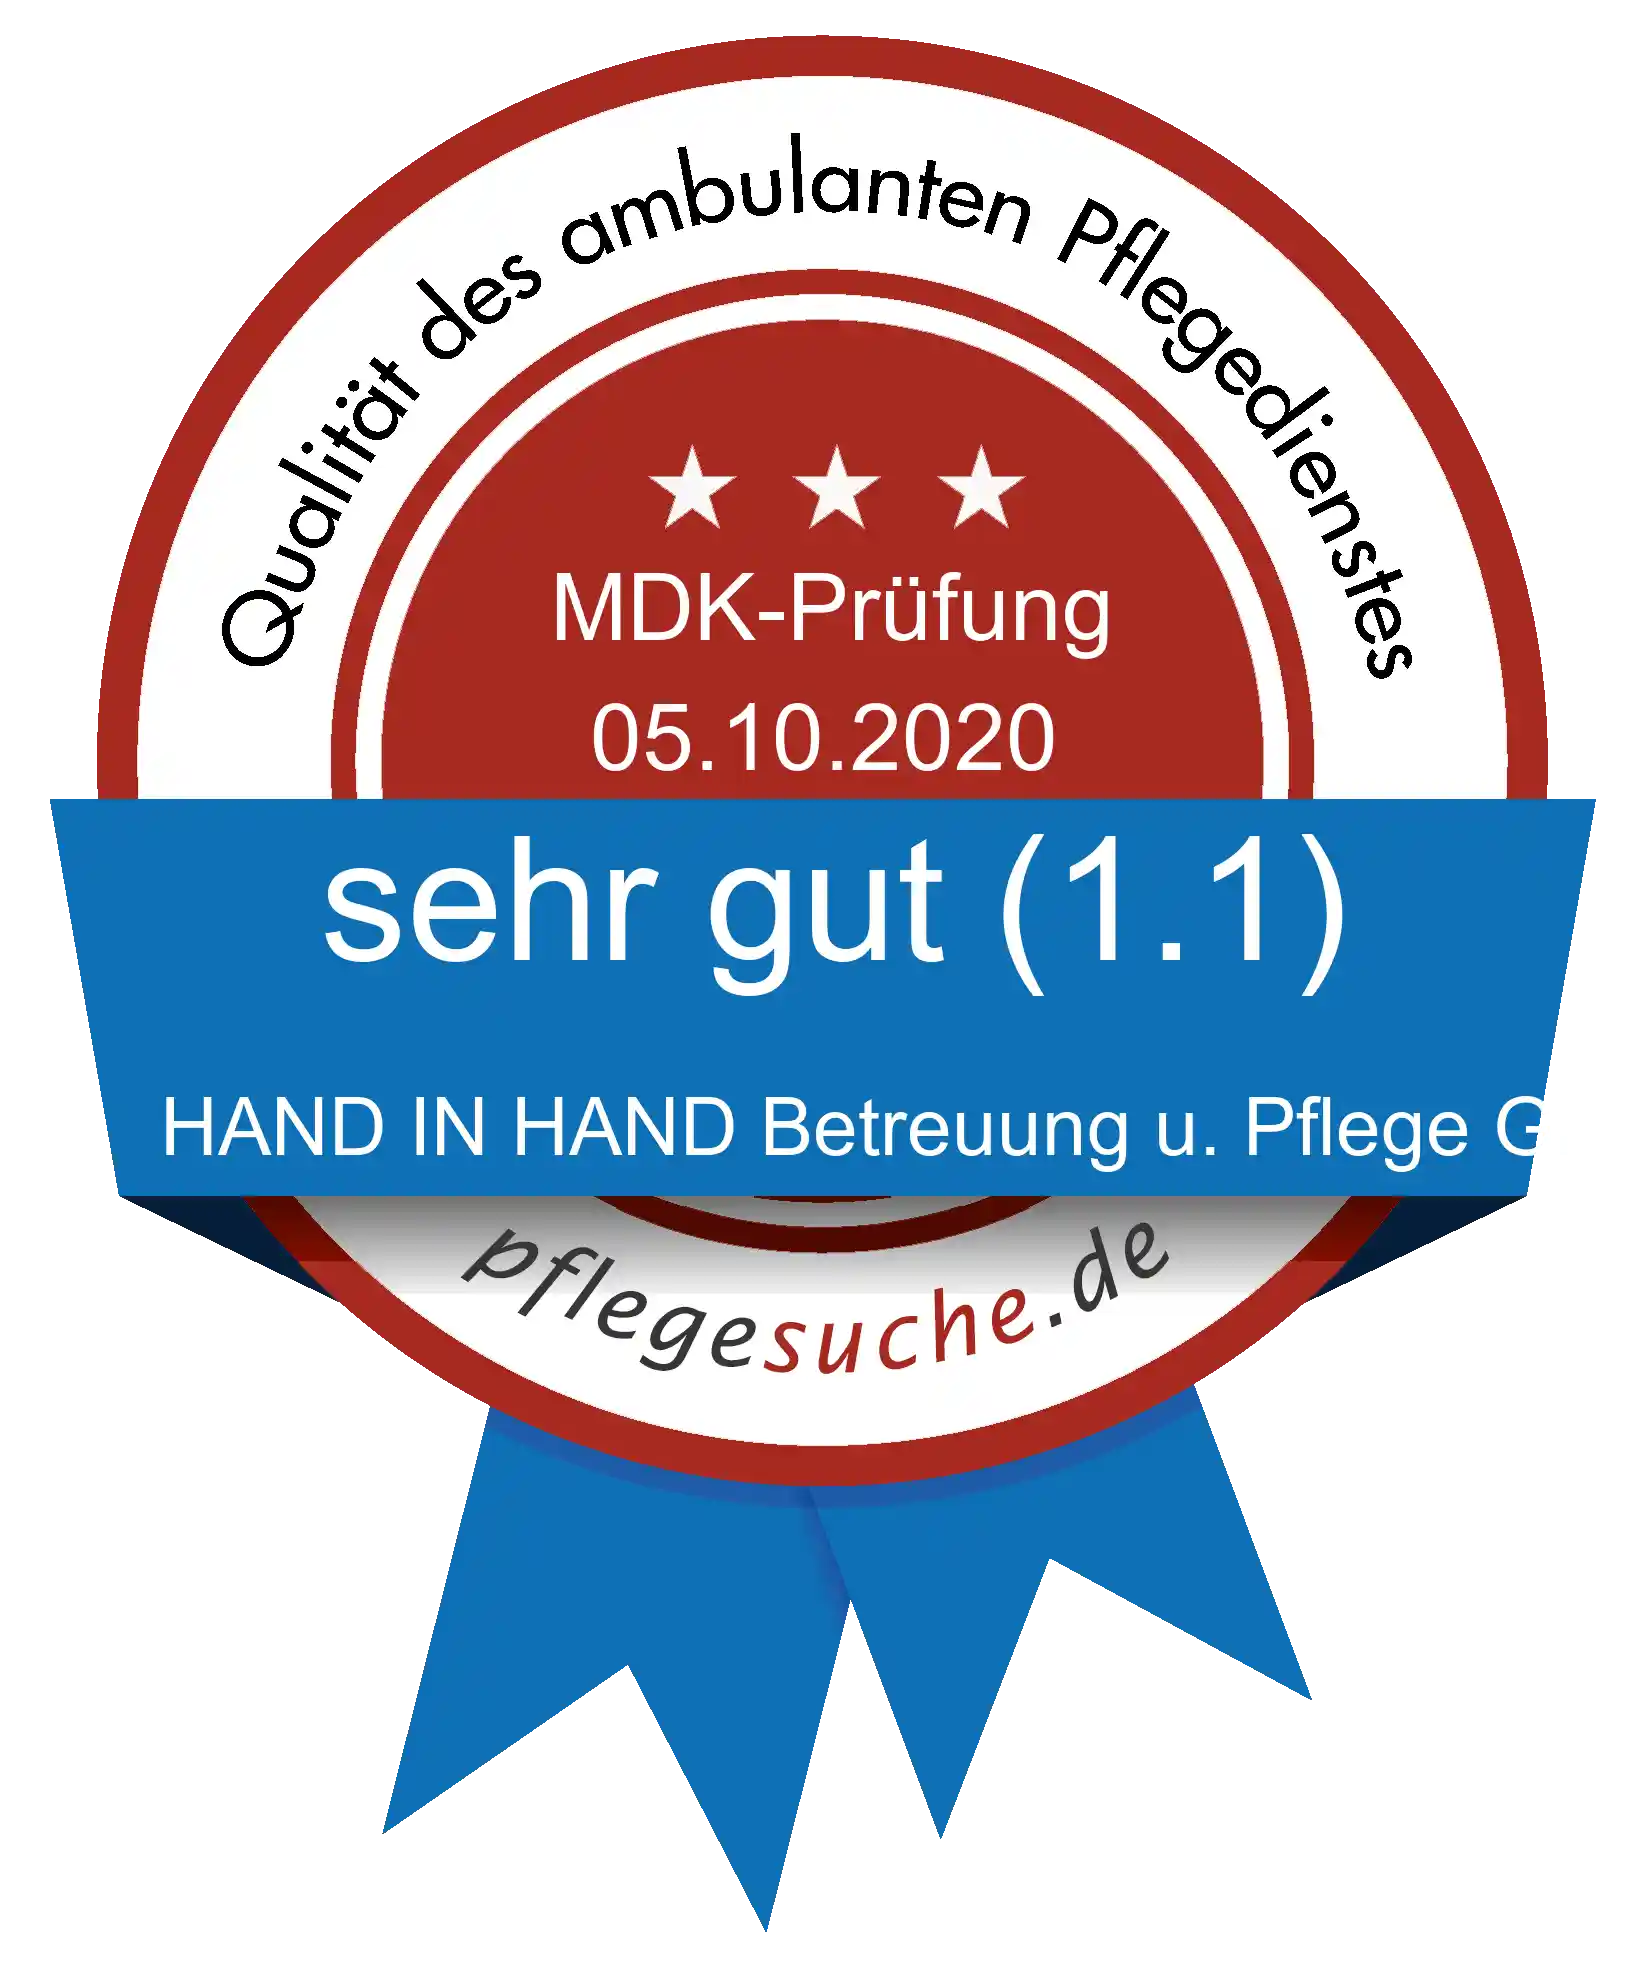 Siegel Benotung: HAND IN HAND Betreuung u. Pflege GmbH